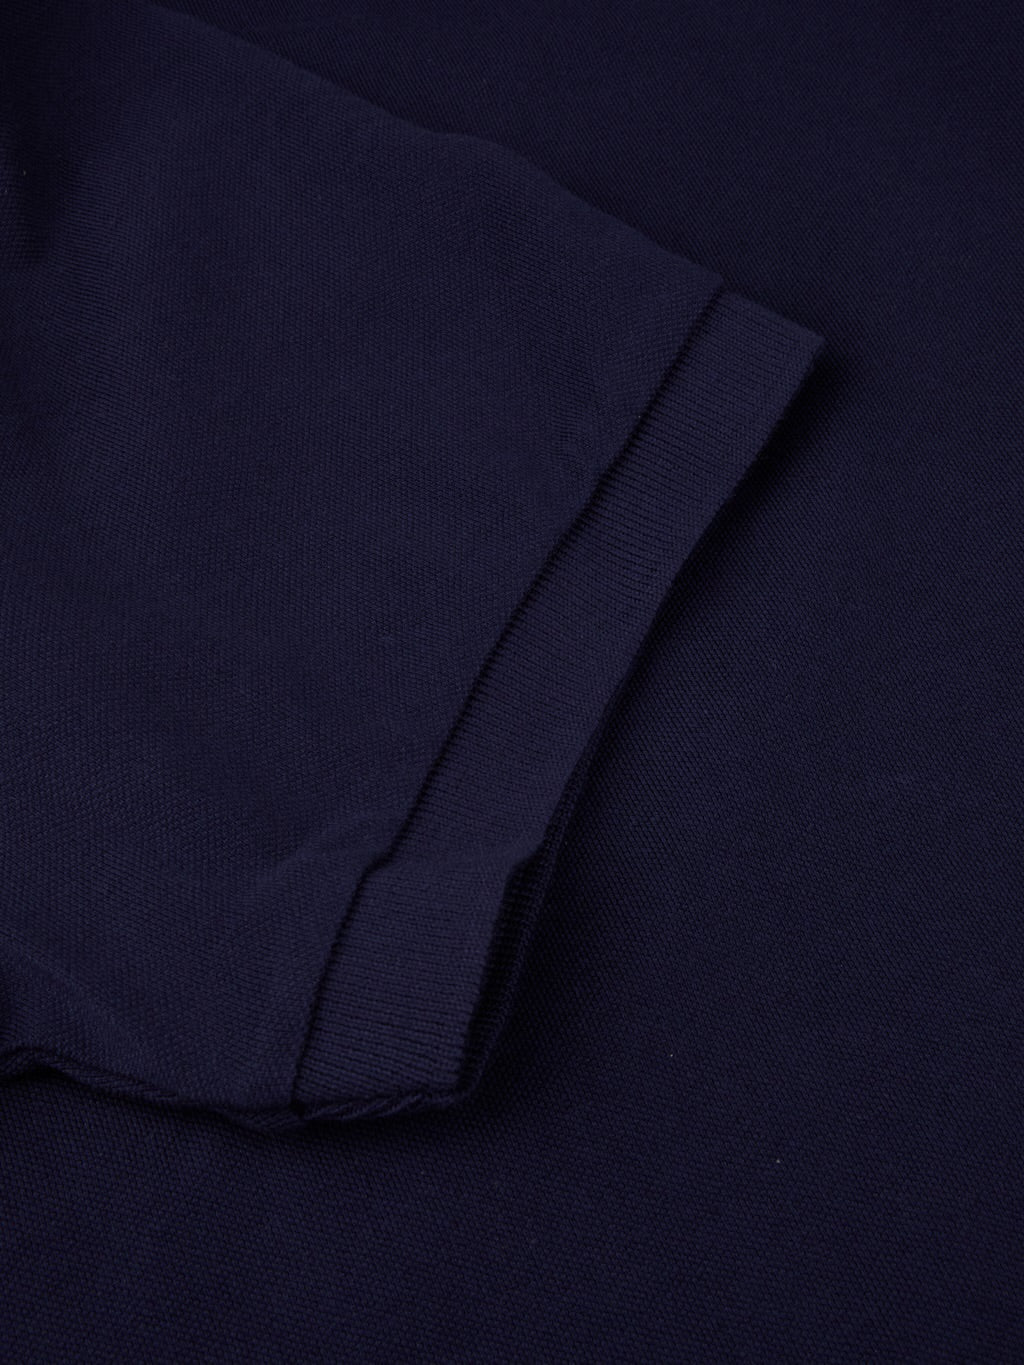 Polo shirt printed Cotton elastane pique